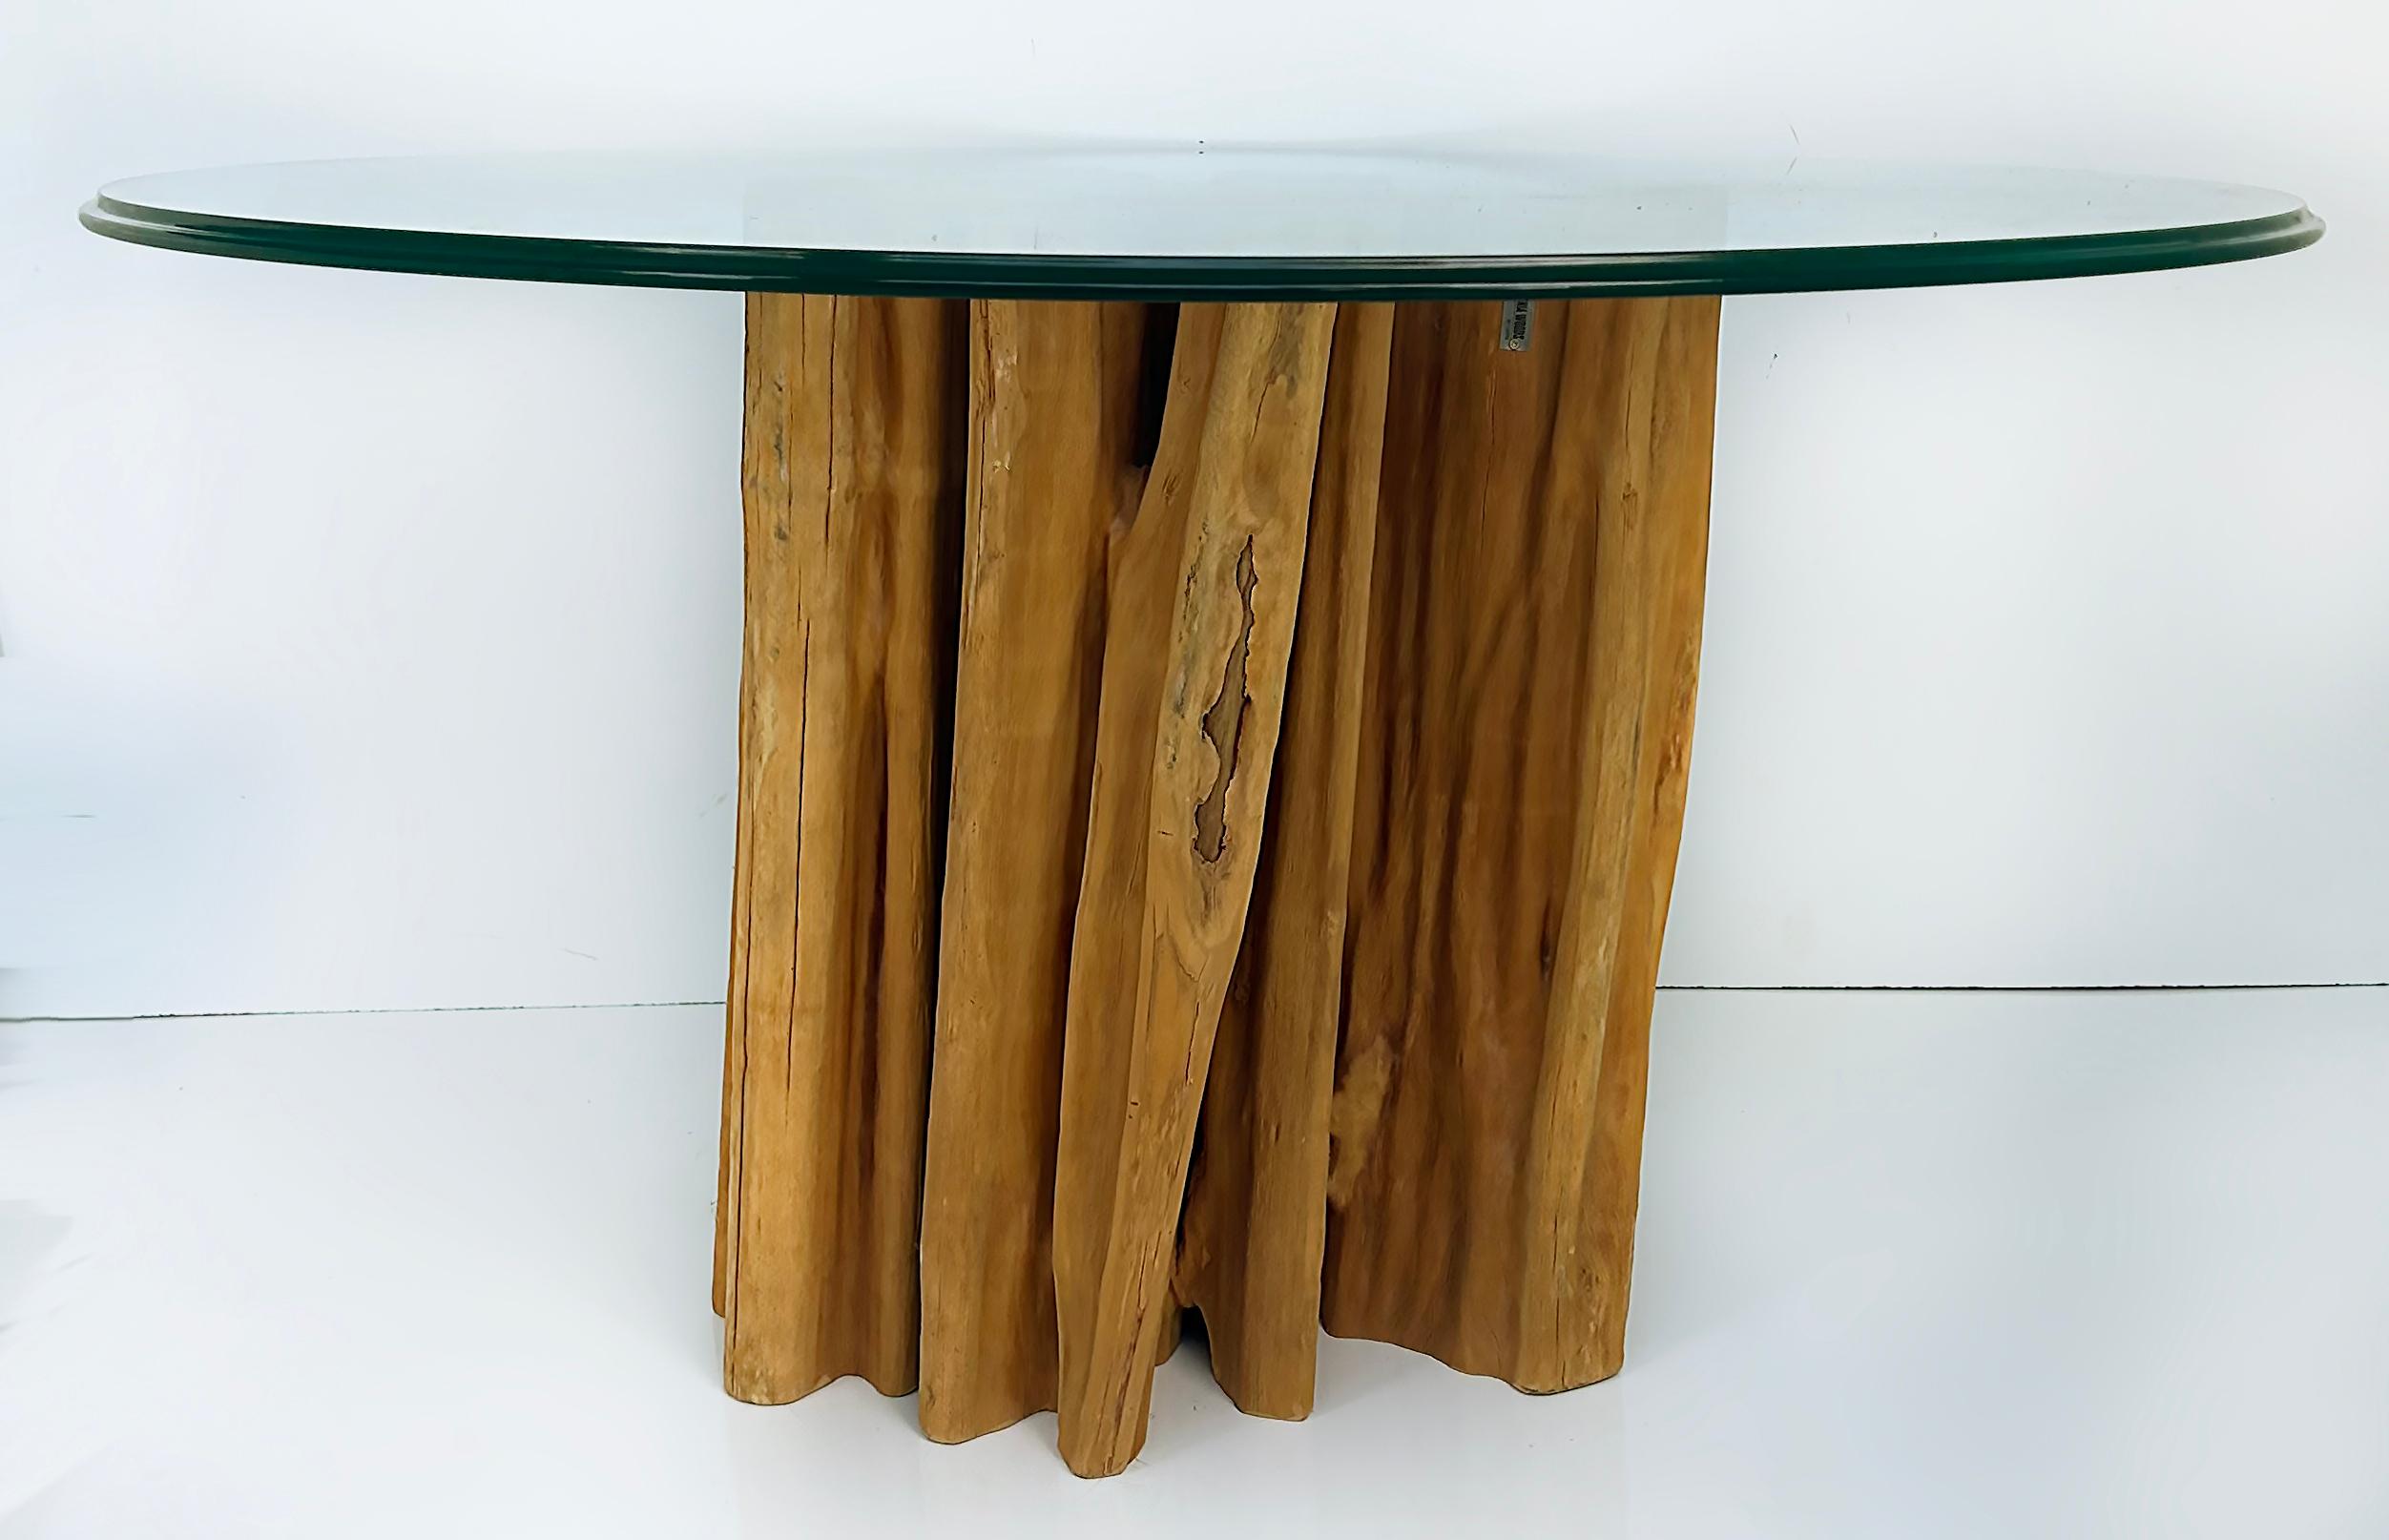 Base de table à manger Guaranta brésilienne moderne et organique, bois de récupération

Nous proposons à la vente une base de table moderne et organique en bois d'Amazonie brésilienne Guaranta récupéré. La base est naturellement irrégulière avec des